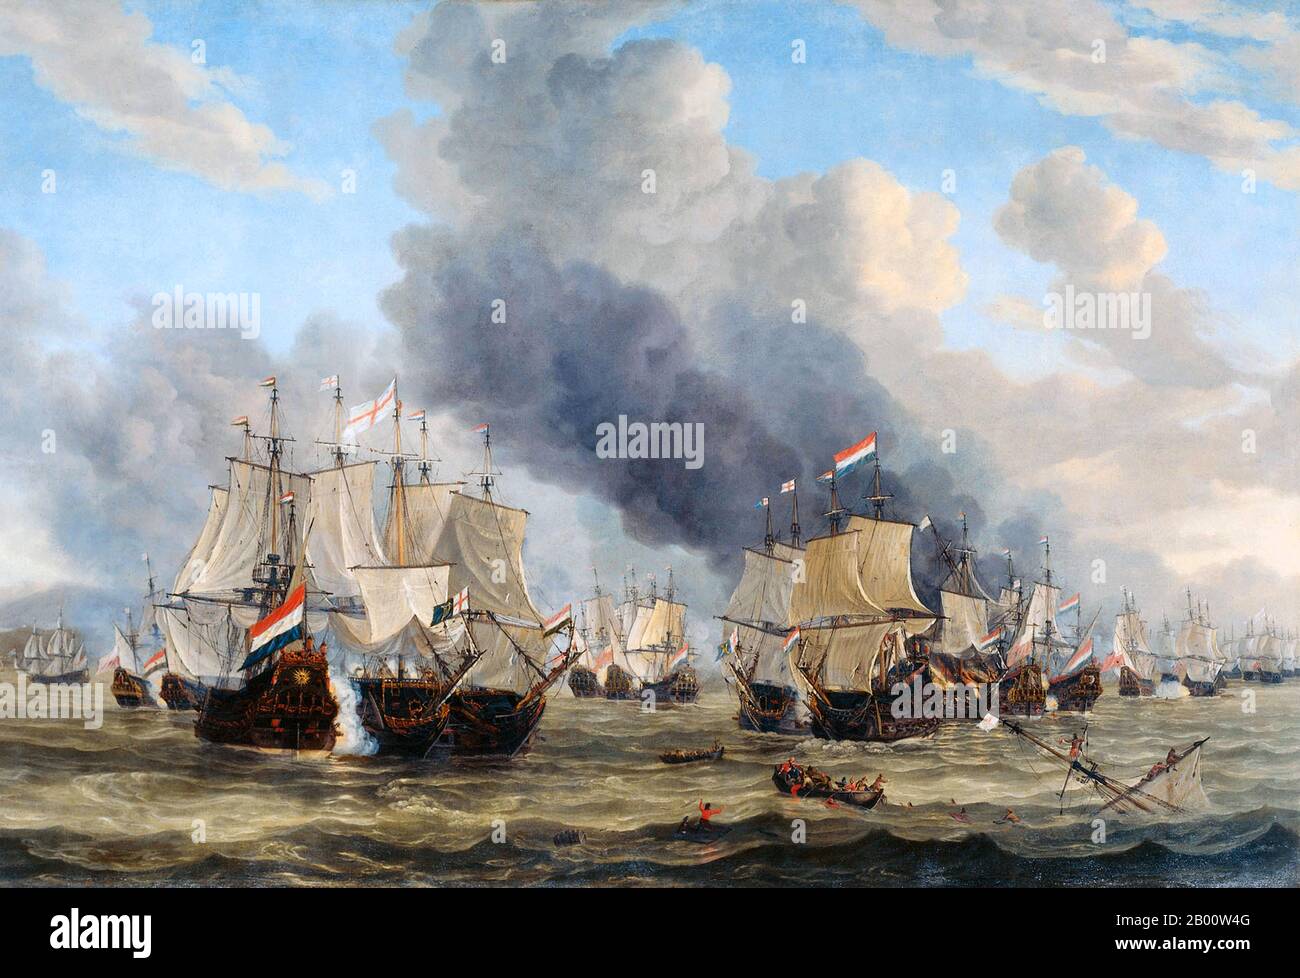 Italien/Niederlande: "Die Schlacht von Livorno (14. märz 1653)". Öl auf Leinwand Gemälde von Reinier Nooms (1623-1664), c. 1653-1664. Die Seeschlacht von Leghorn (die Holländer nennen die Begegnung mit dem italienischen Namen Livorno) fand am 14. März (4. März Old Style) 1653, während des ersten Anglo-Niederländischen Krieges, in der Nähe von Leghorn (Livorno), Italien. Es war ein Sieg einer holländischen Flotte unter Commodore Johan van Galen über eine englische Staffel unter Captain Henry Appleton. Danach kam eine englische Flotte unter Kapitän Richard Badiley, die Appleton zu erreichen versucht hatte, aber war unternumeriert und floh. Stockfoto